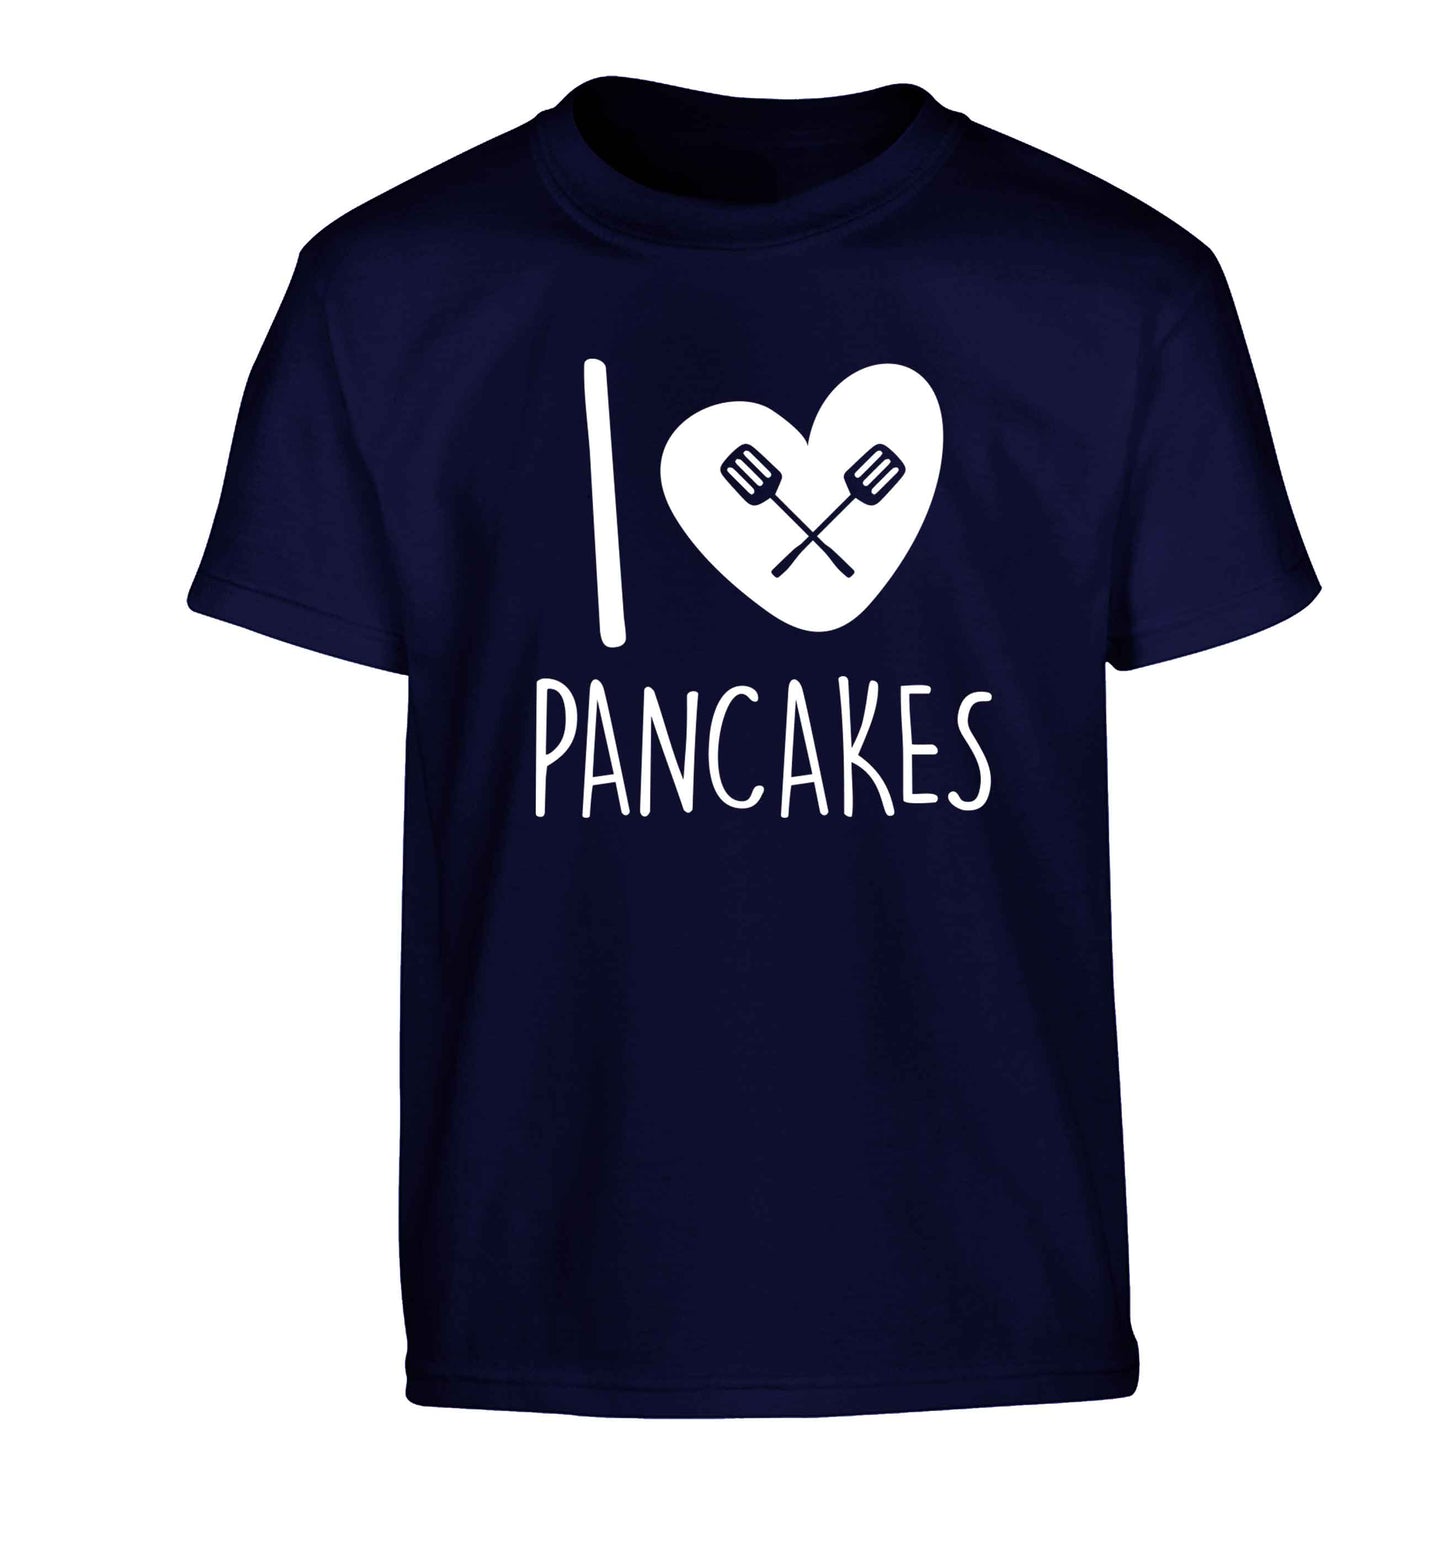 I love pancakes Children's navy Tshirt 12-13 Years